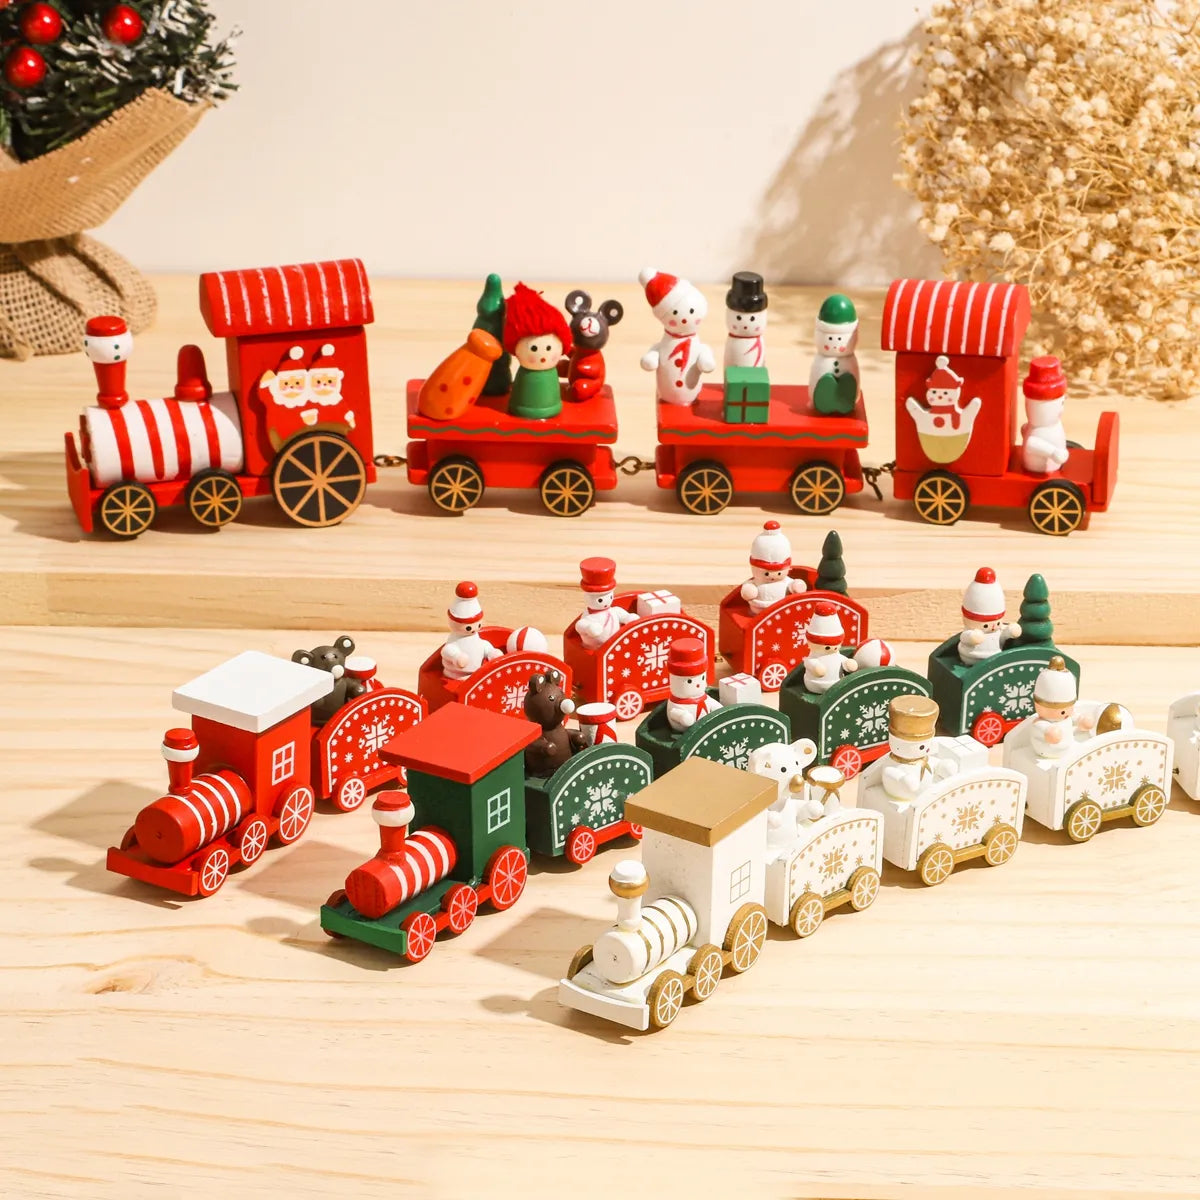 Décoration de train de Noël festive, ornements de maison et cadeaux de Noël